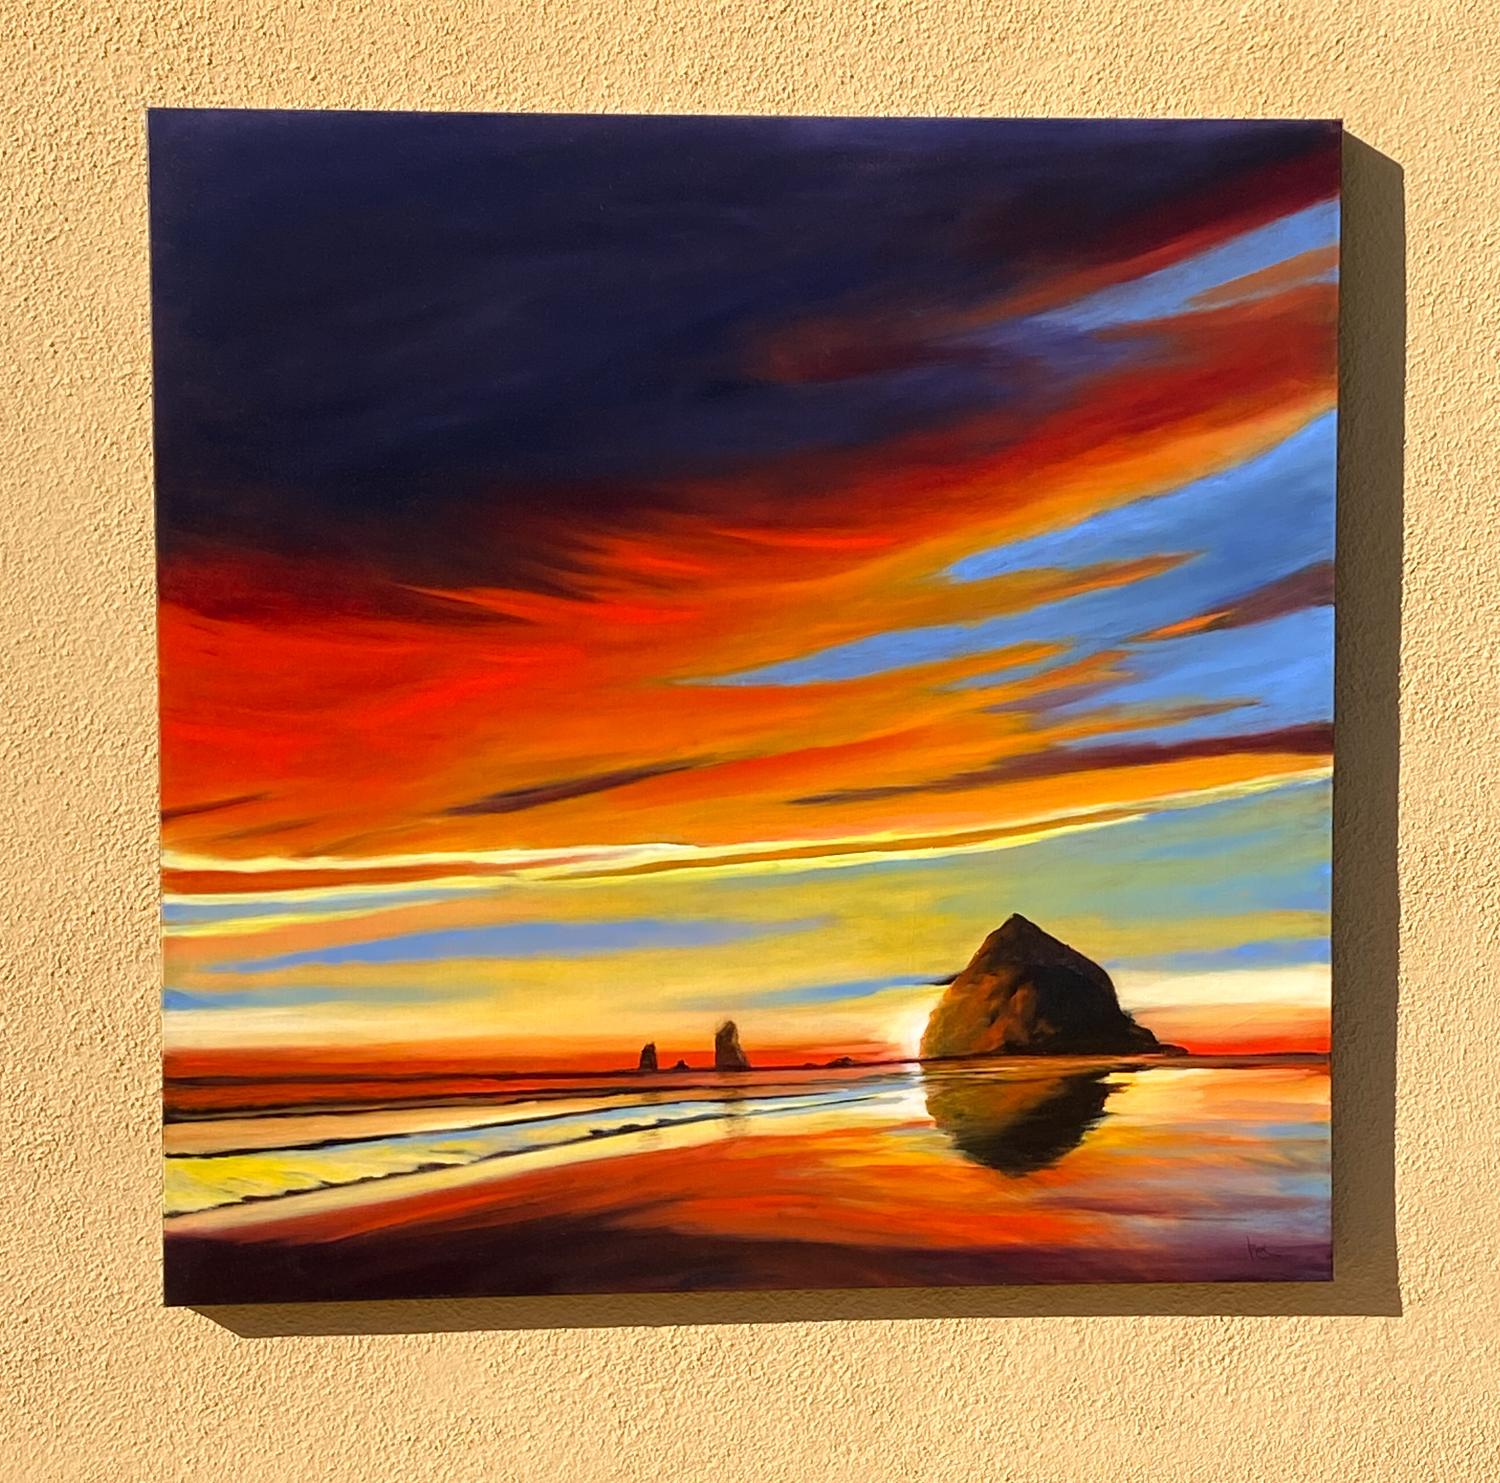 <p>Kommentare des Künstlers<br>Dramatische technikfarbene Wolken ziehen über den Himmel und reflektieren ihre leuchtenden Farben auf dem Wasser und dem Sand darunter. Das Licht der fast verdeckten Sonne dringt durch den Monolithen und erzeugt